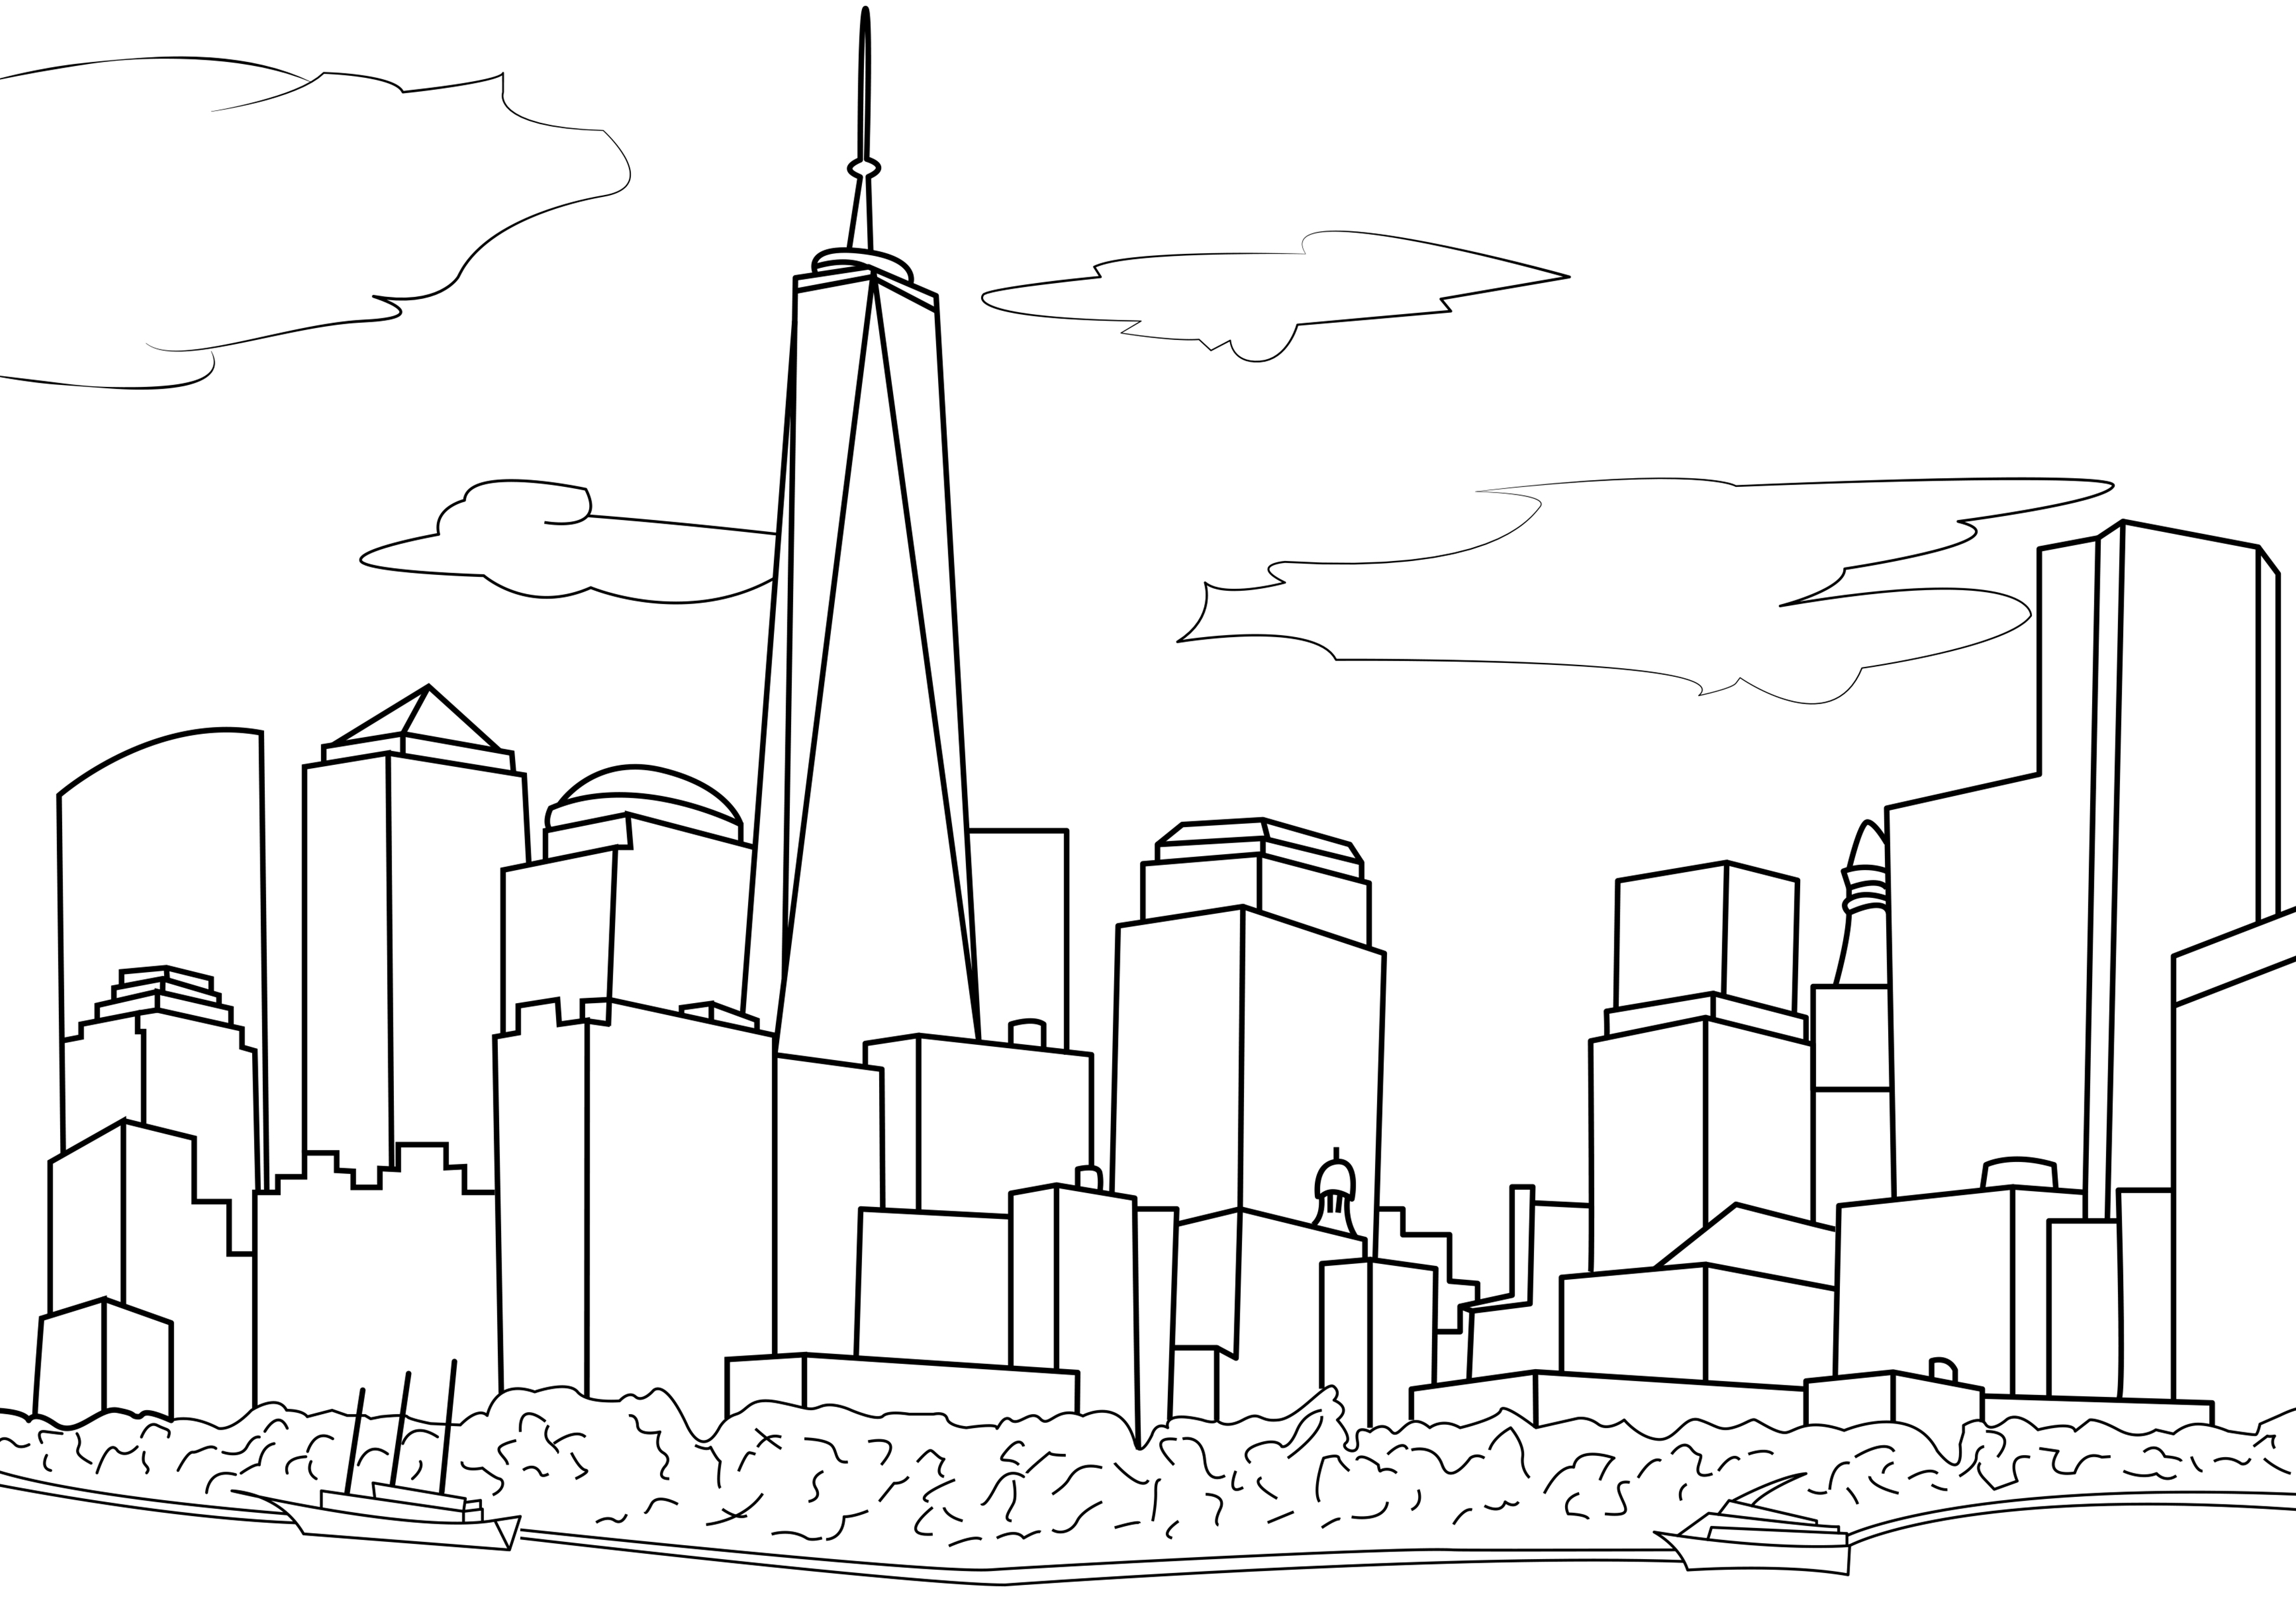 Einfache Zeichnung, die die Skyline von New York darstellt. Die Skyline von New York City ist ikonisch und auf der ganzen Welt wiedererkennbar. Sie zeigt viele berühmte Wolkenkratzer wie das Empire State Building, das Chrysler Building und das One World Trade Center. Auf dieser Zeichnung ist nur das One World Trade Center zu sehen, die anderen Gebäude sind fiktiv.